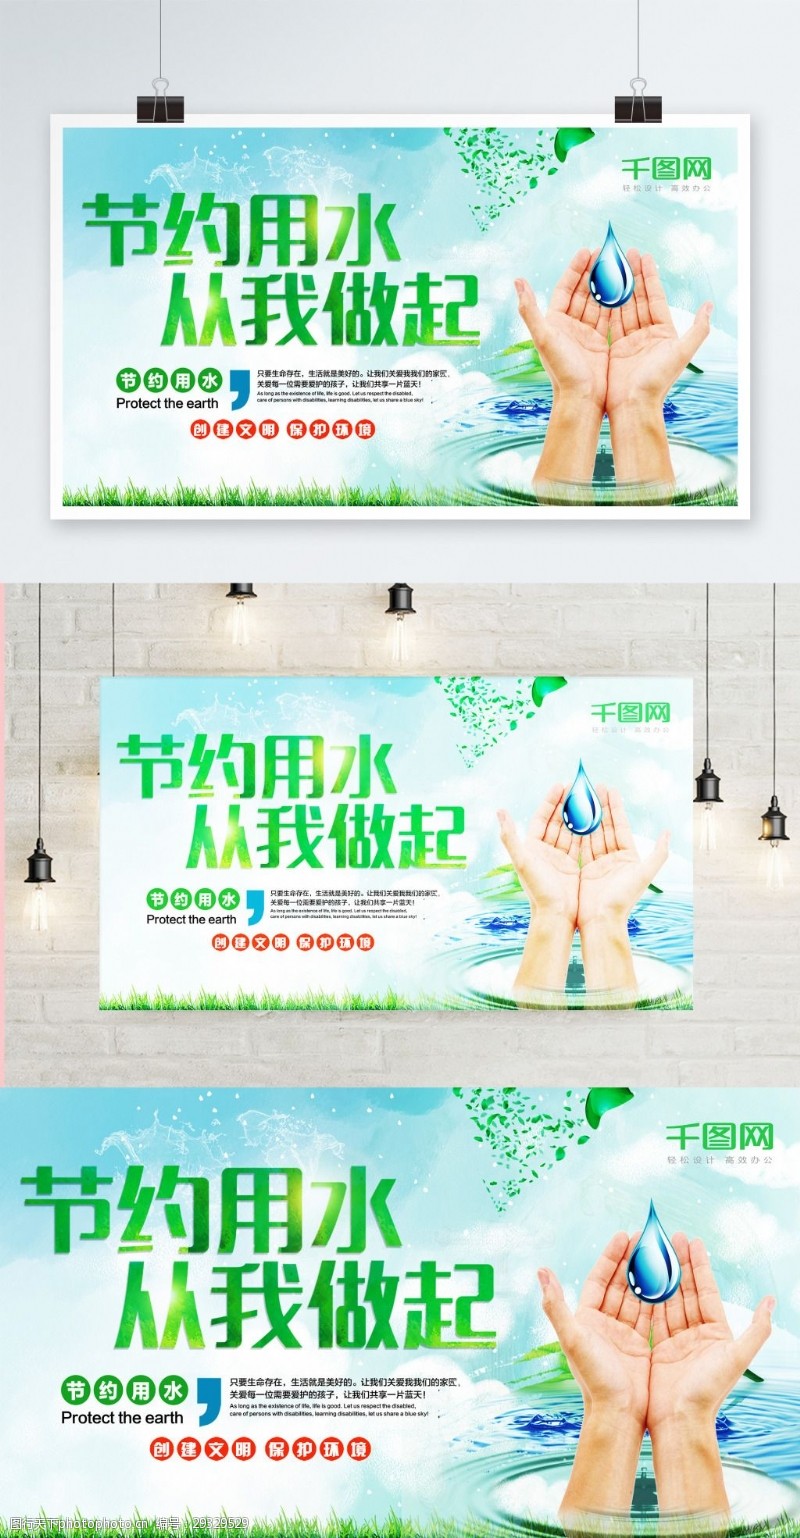 绿色节约用水从我做起公益宣传展板设计